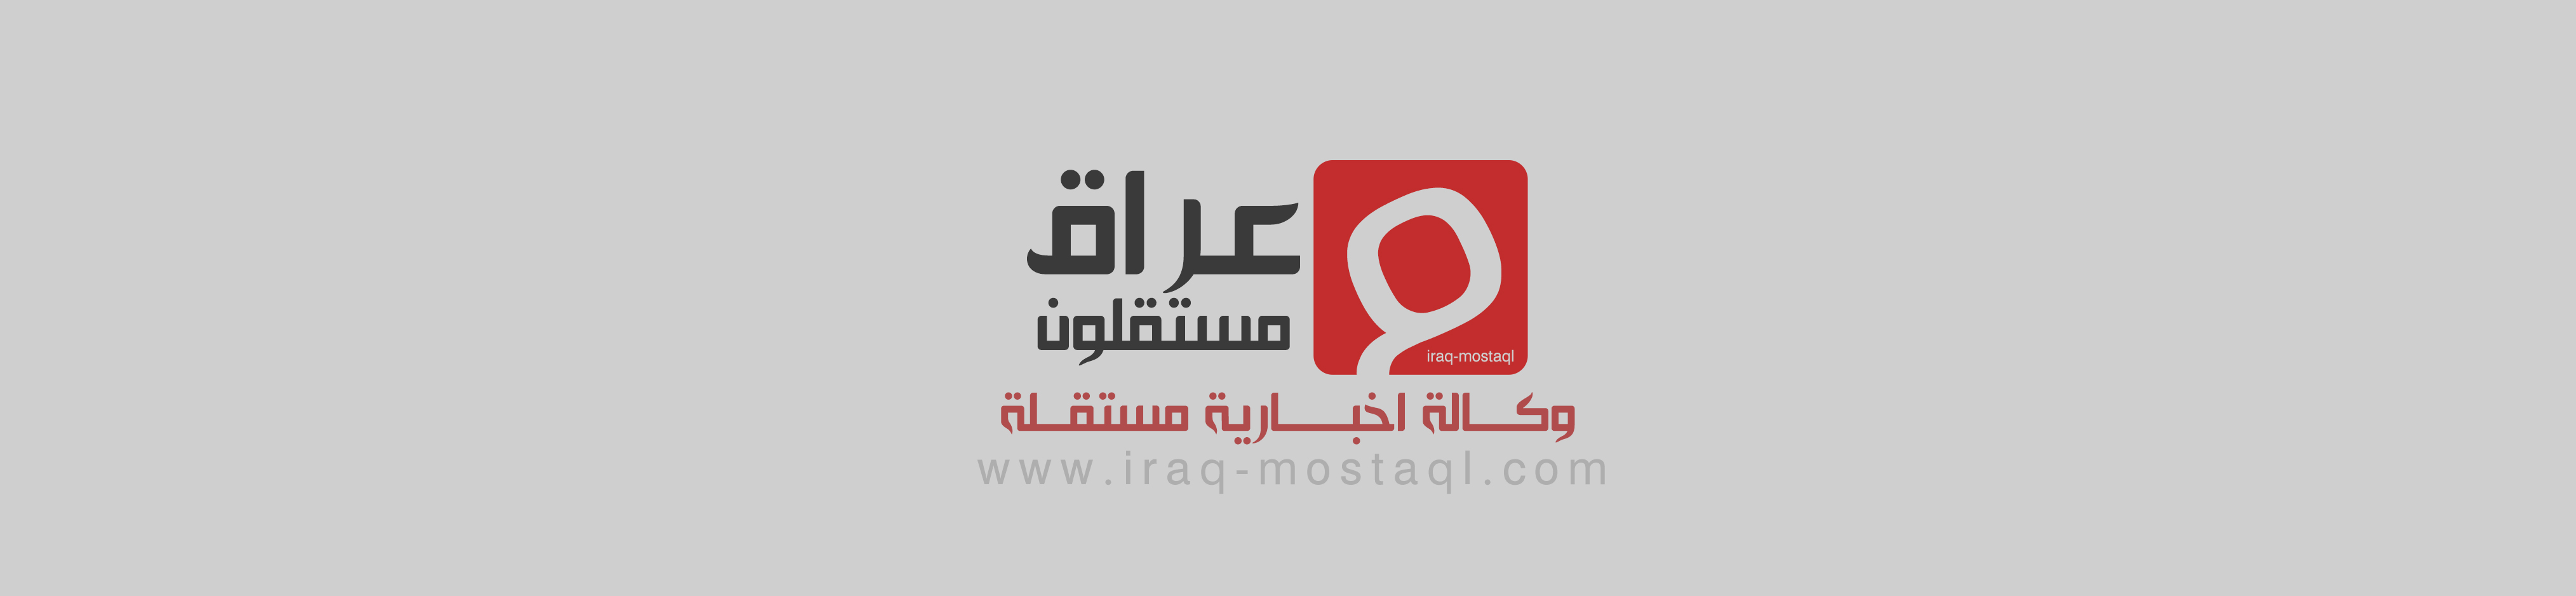 وكالة عراق مستقلون